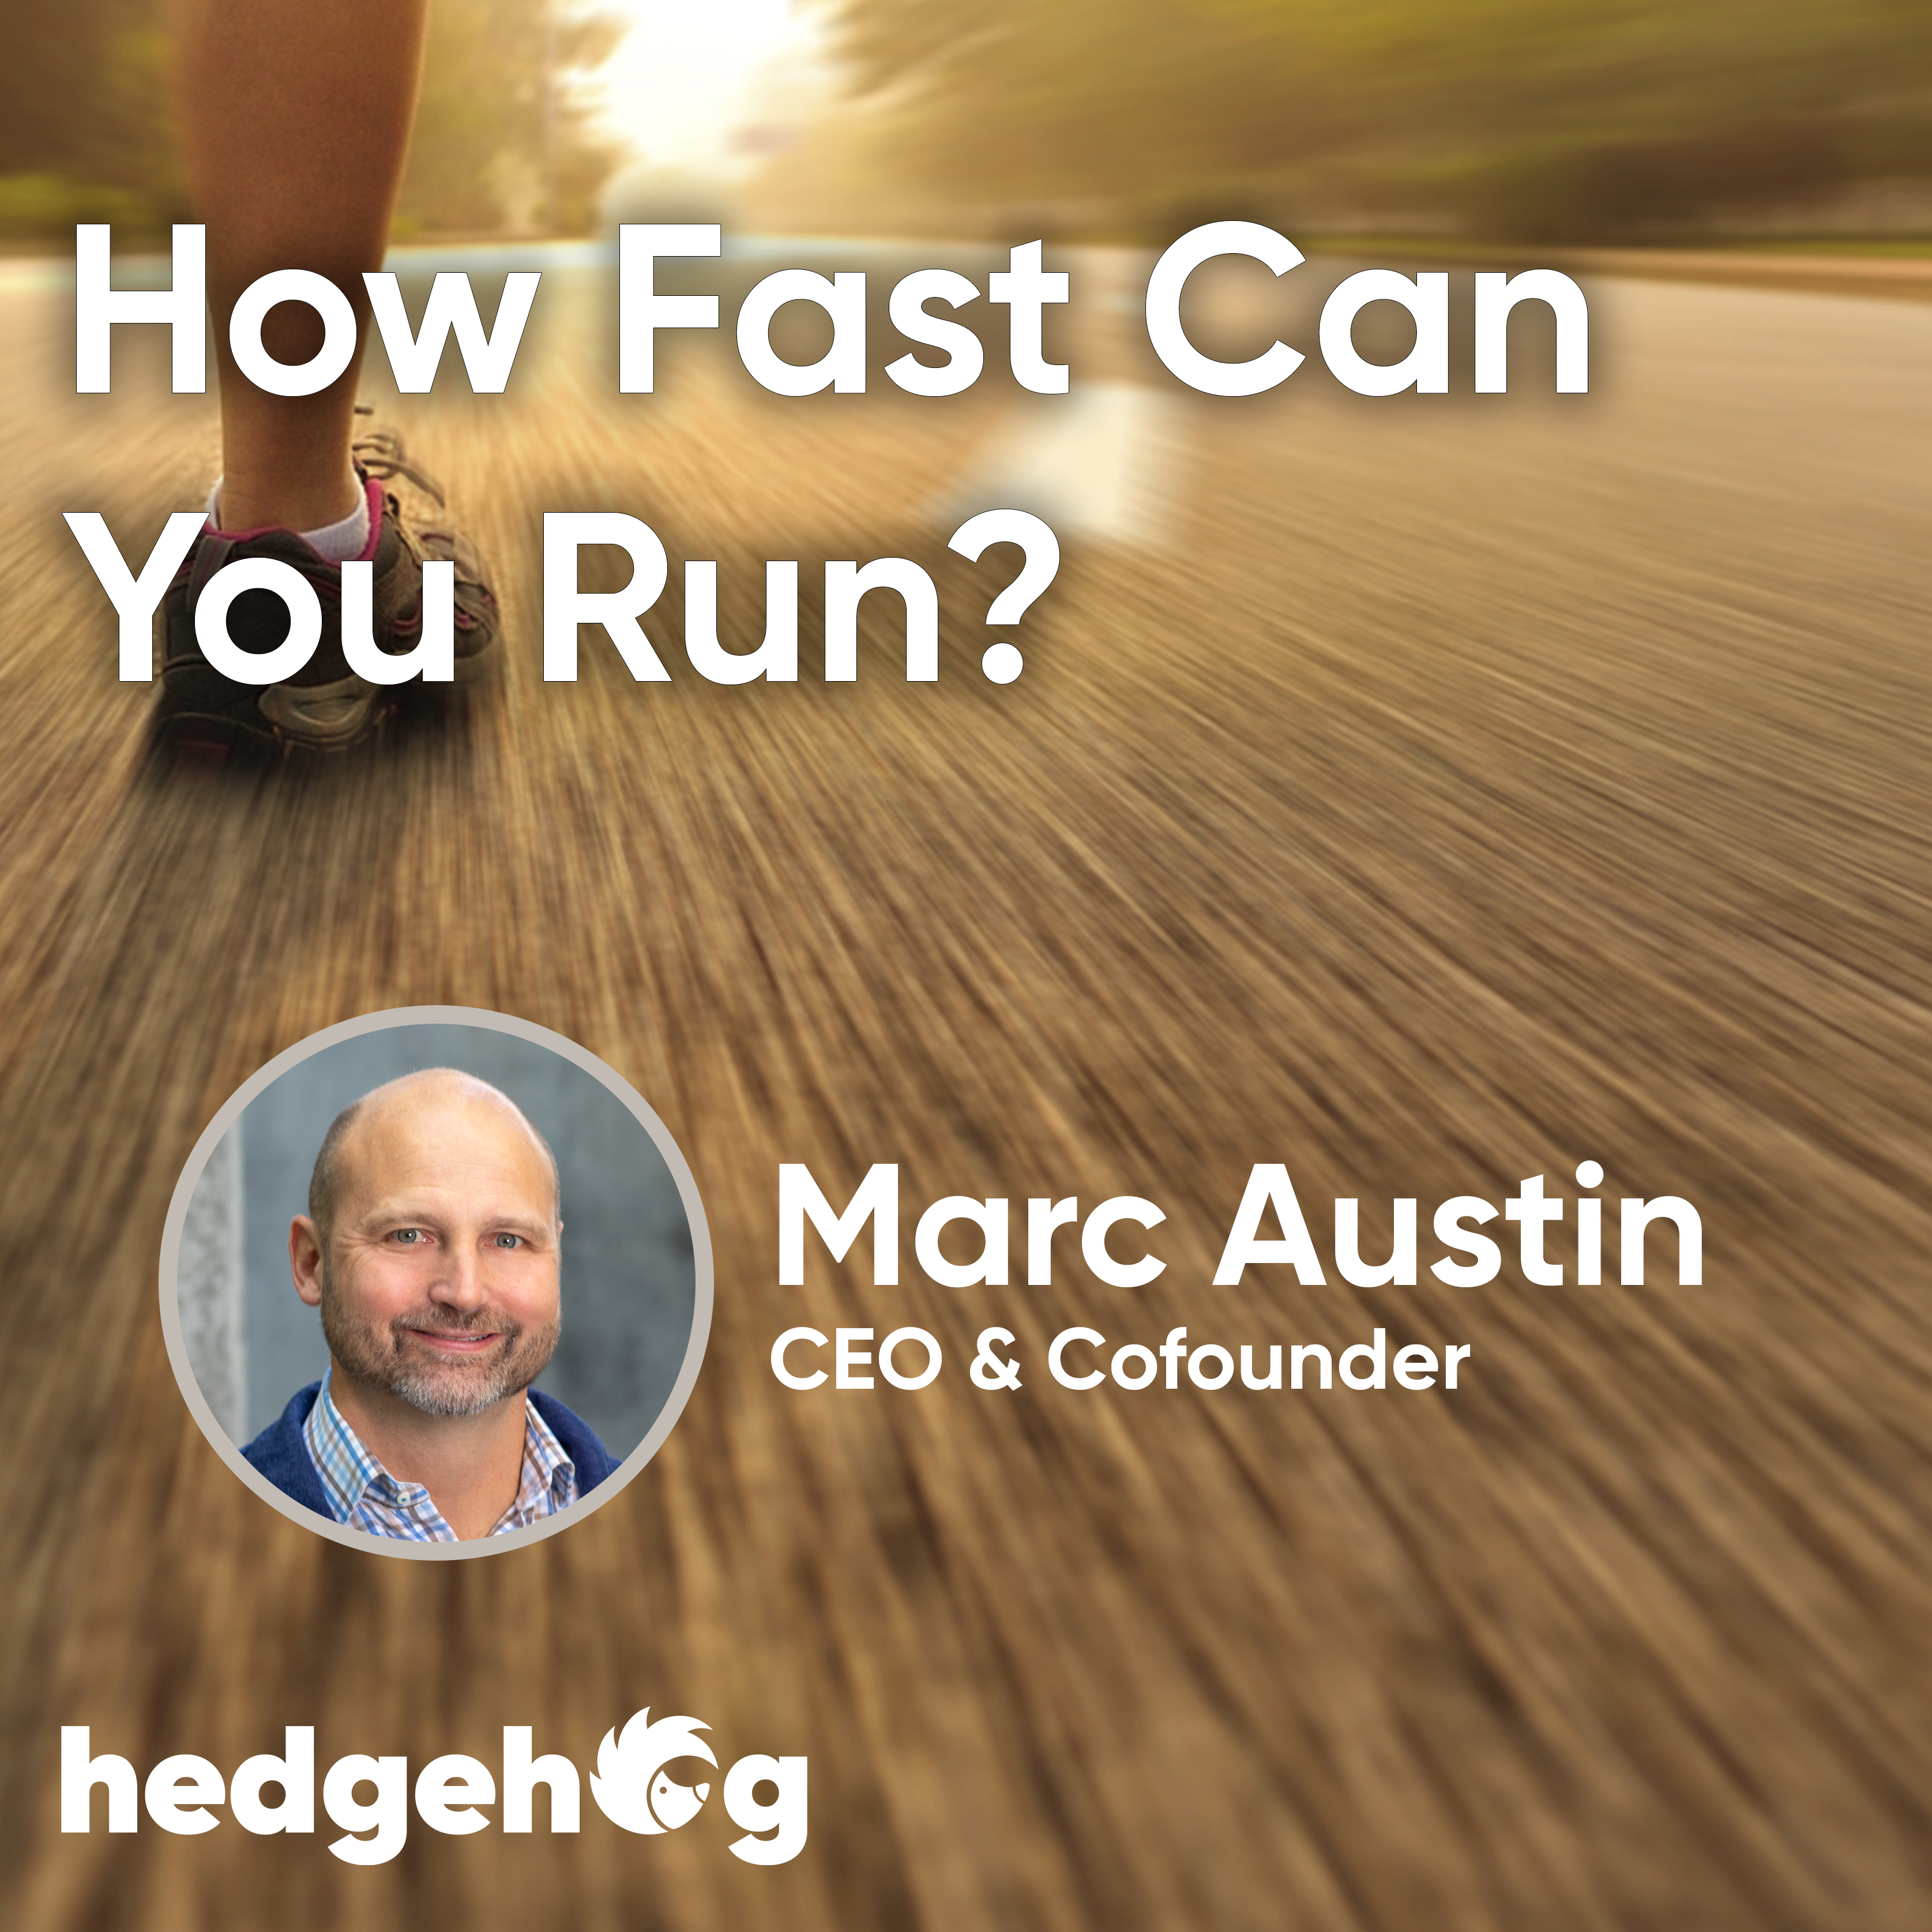 Wie schnell können Sie laufen?